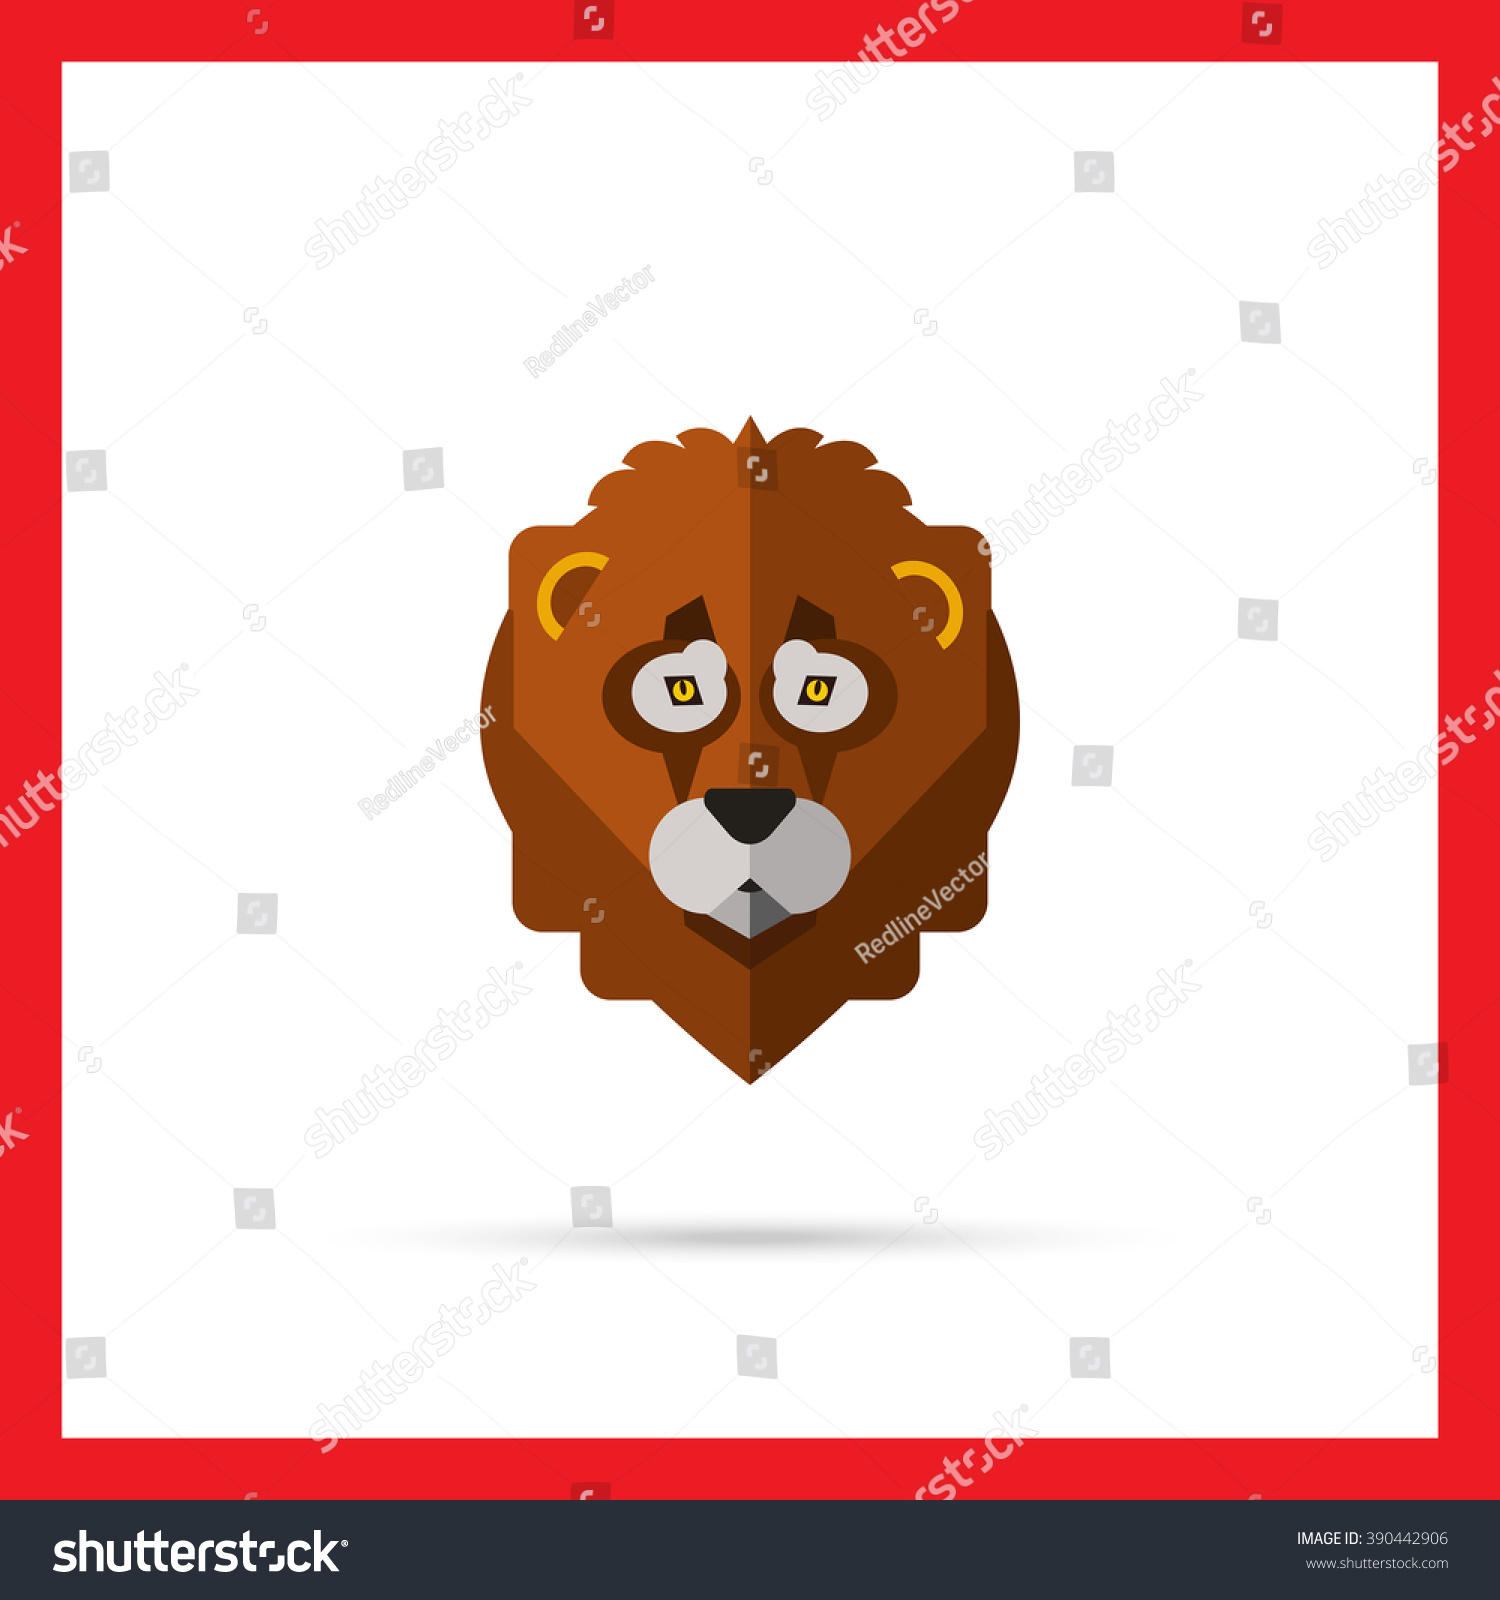 Download Edit Vectors Free Online - Lion head | Shutterstock Editor